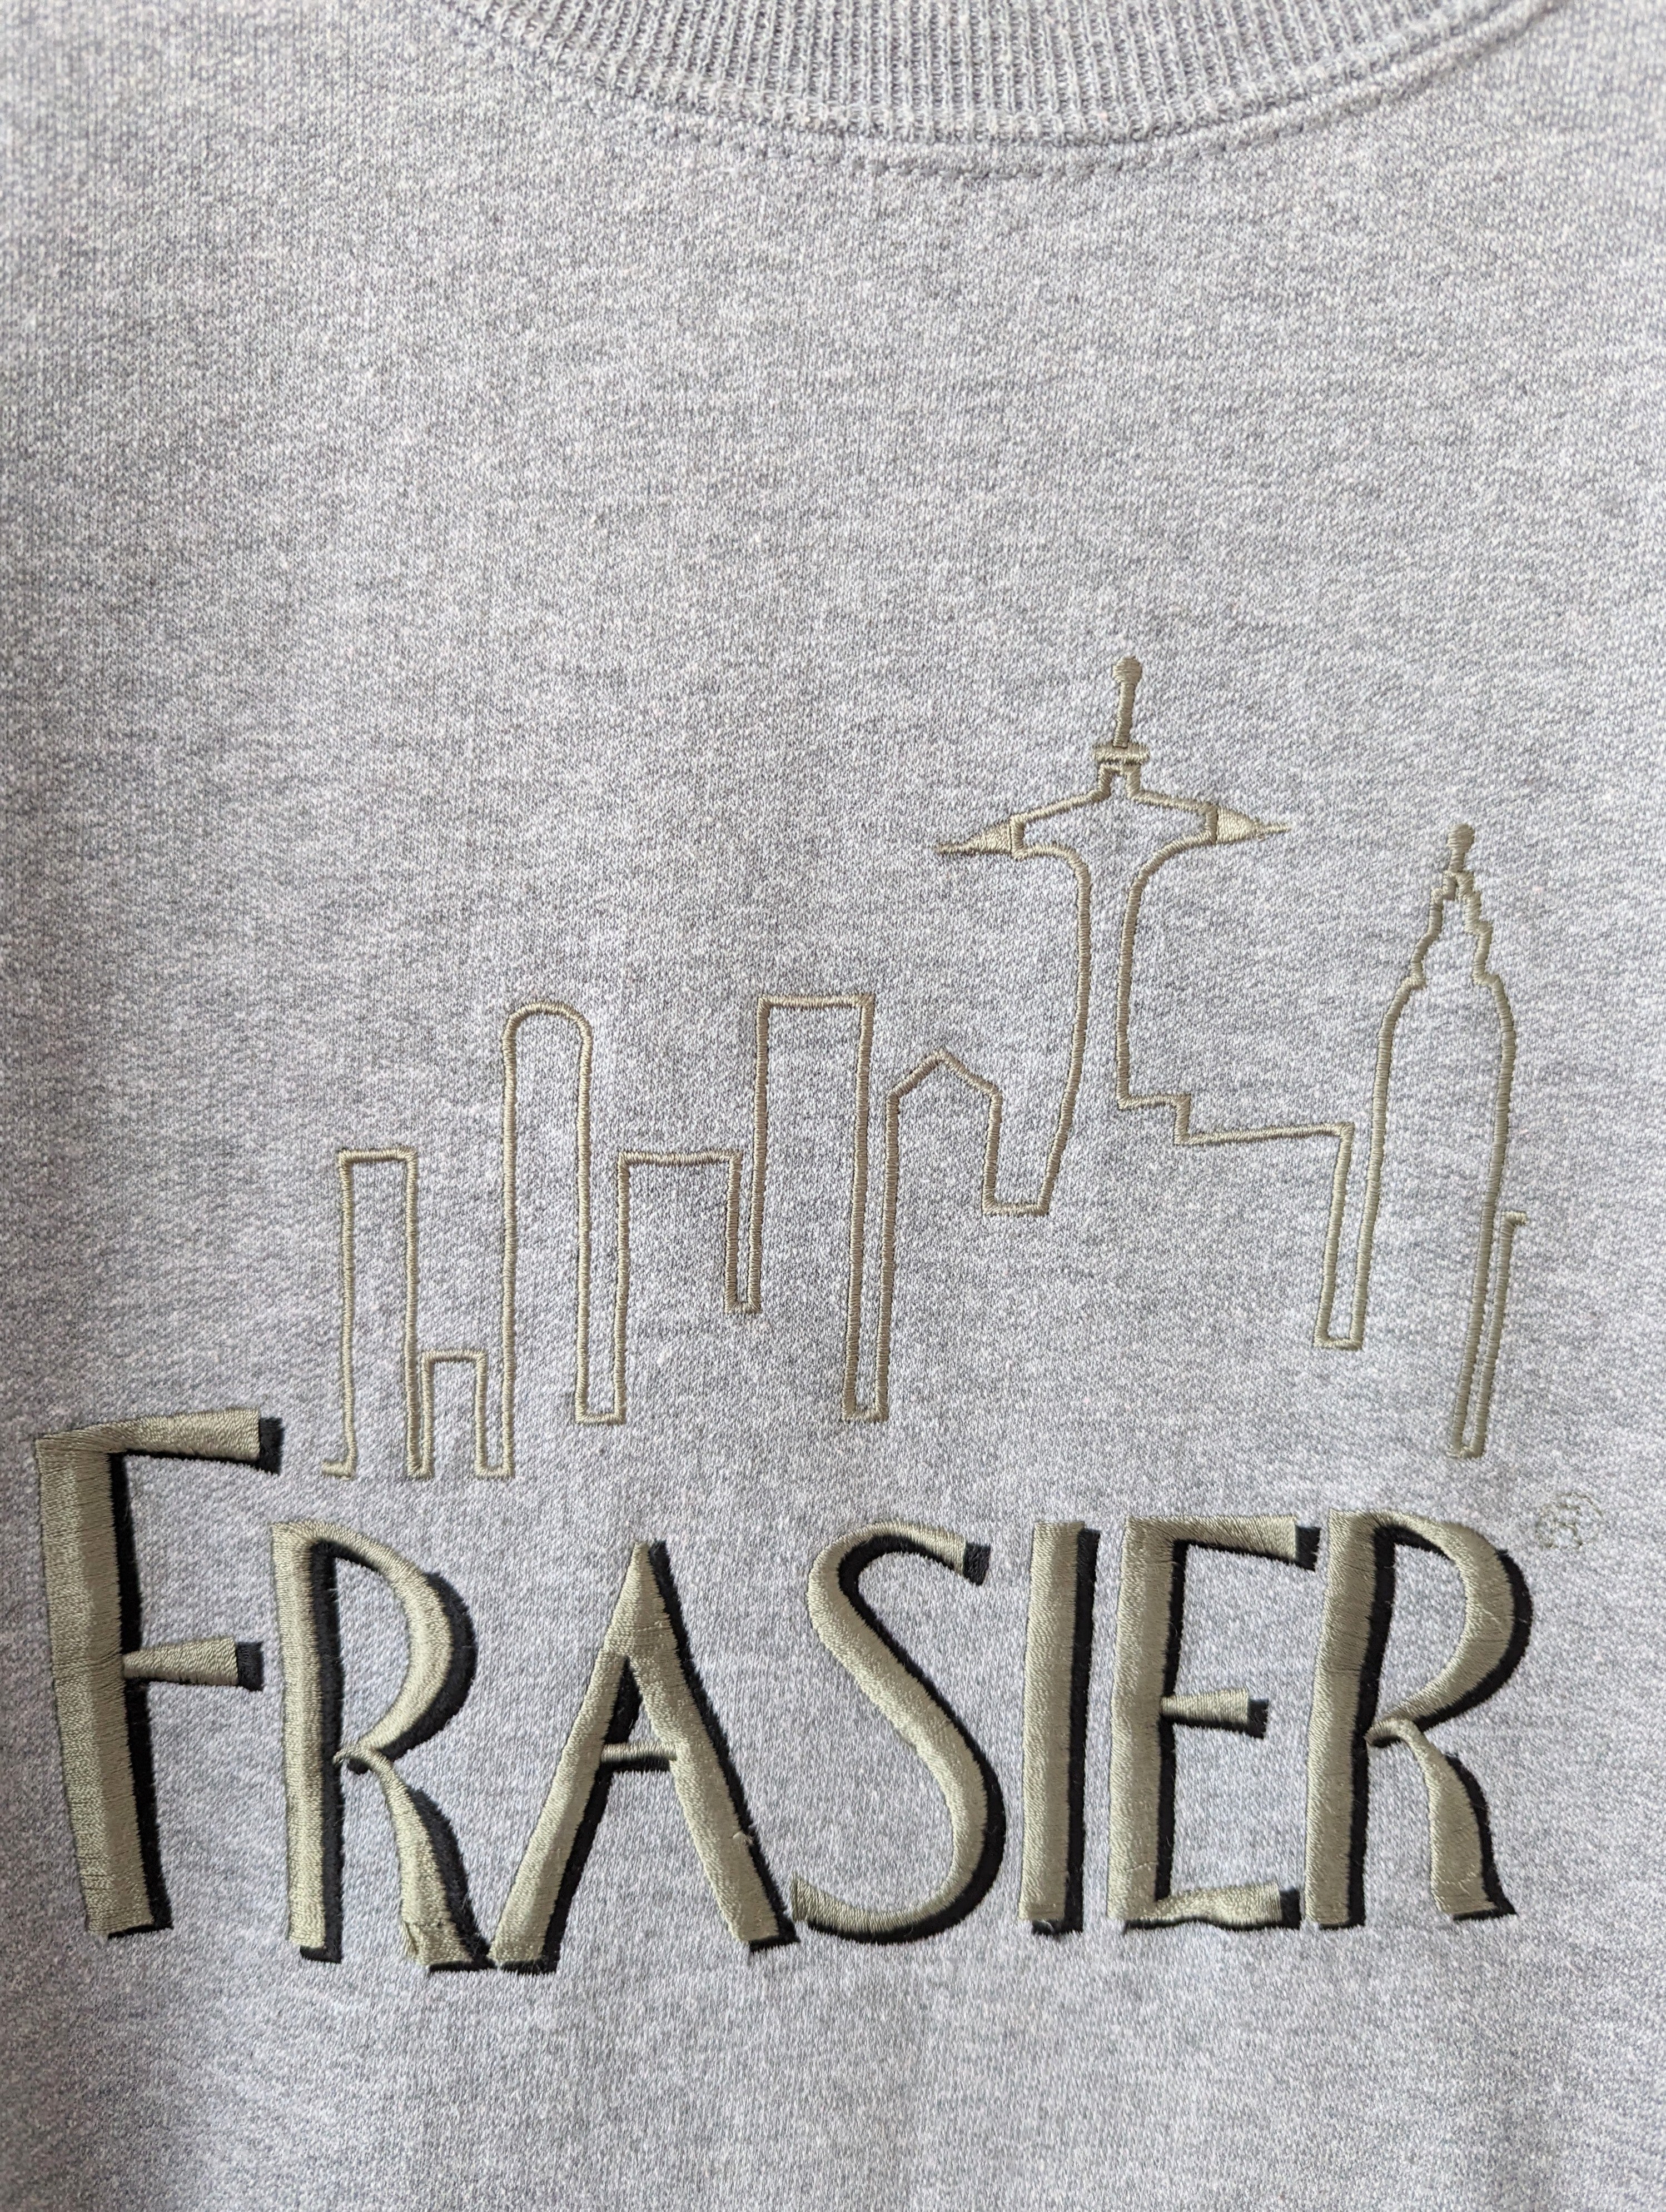 Sweater Frasier 90s Sitcom Merch (XXL)